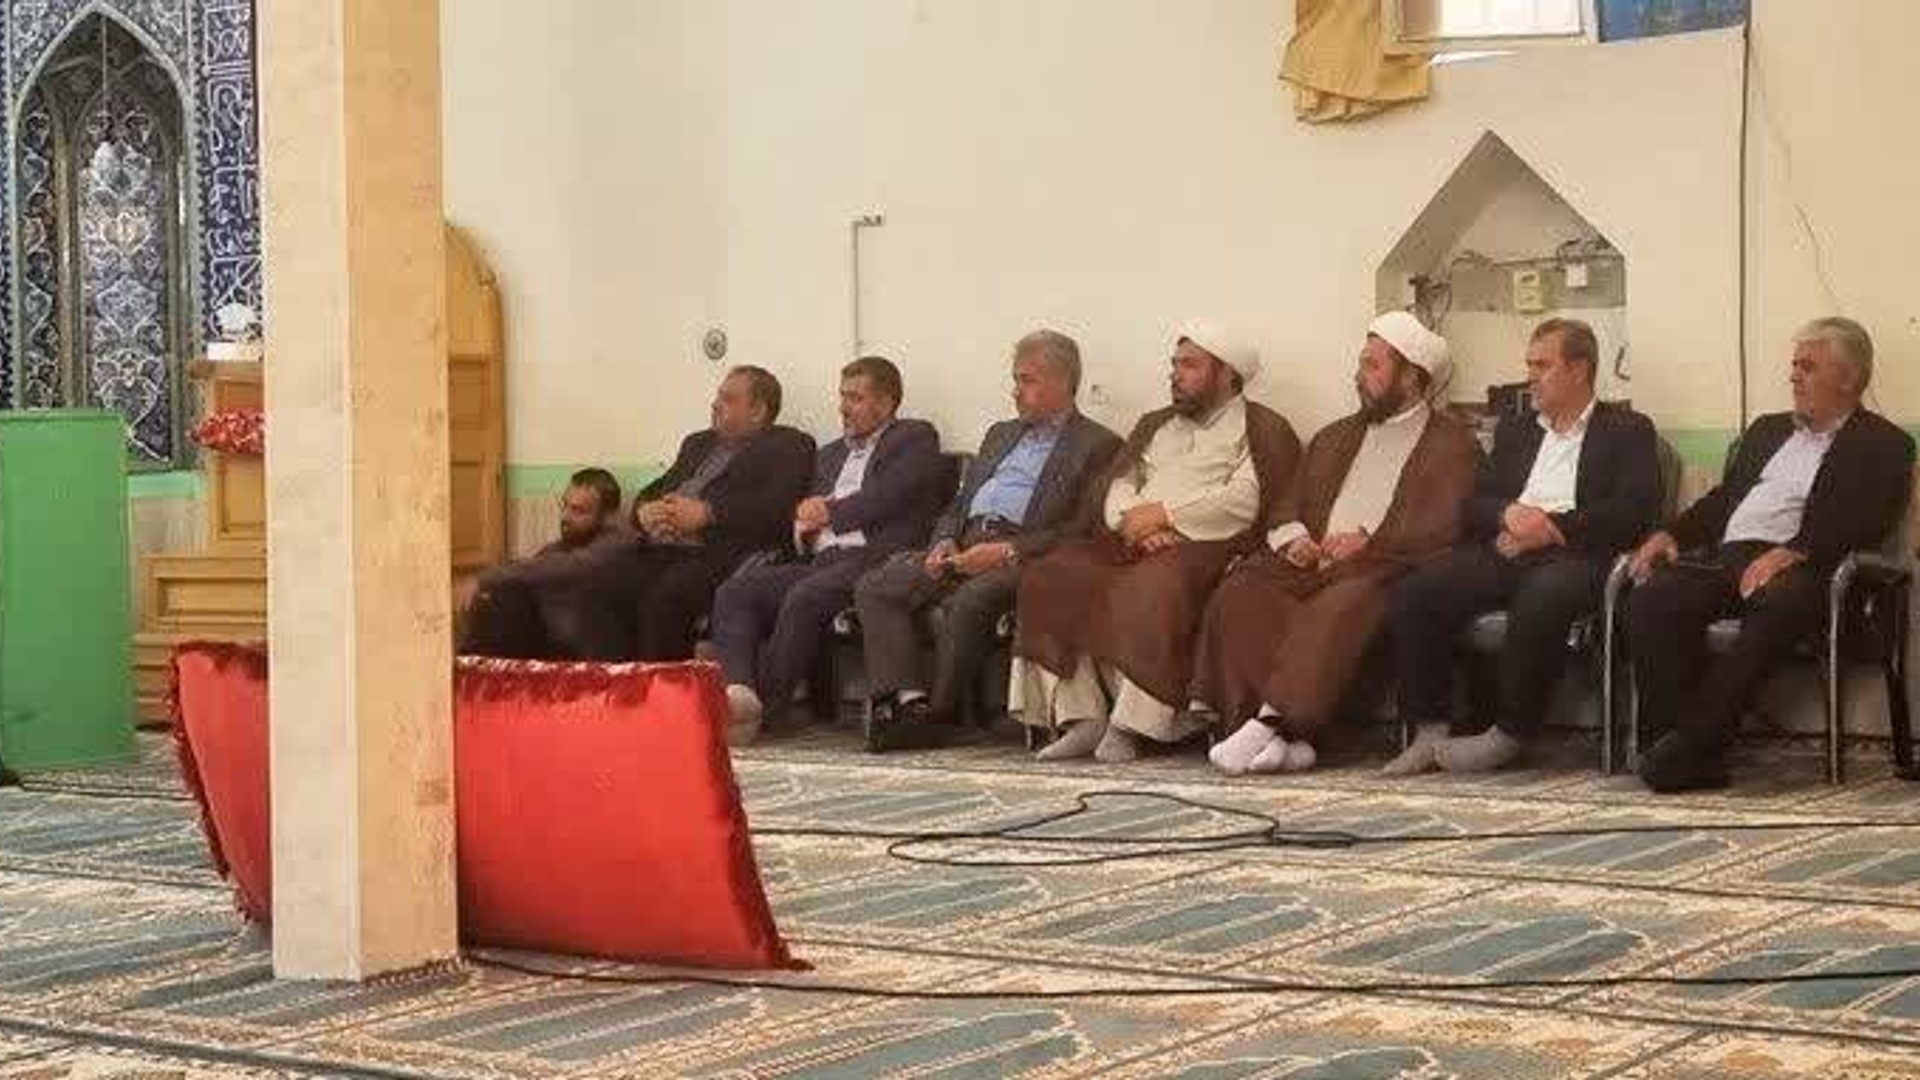 دیدار فرماندار و سایر مسئولین مربوطه با مردم شریف شهر خشکرود و بررسی مشکلات کشاورزان